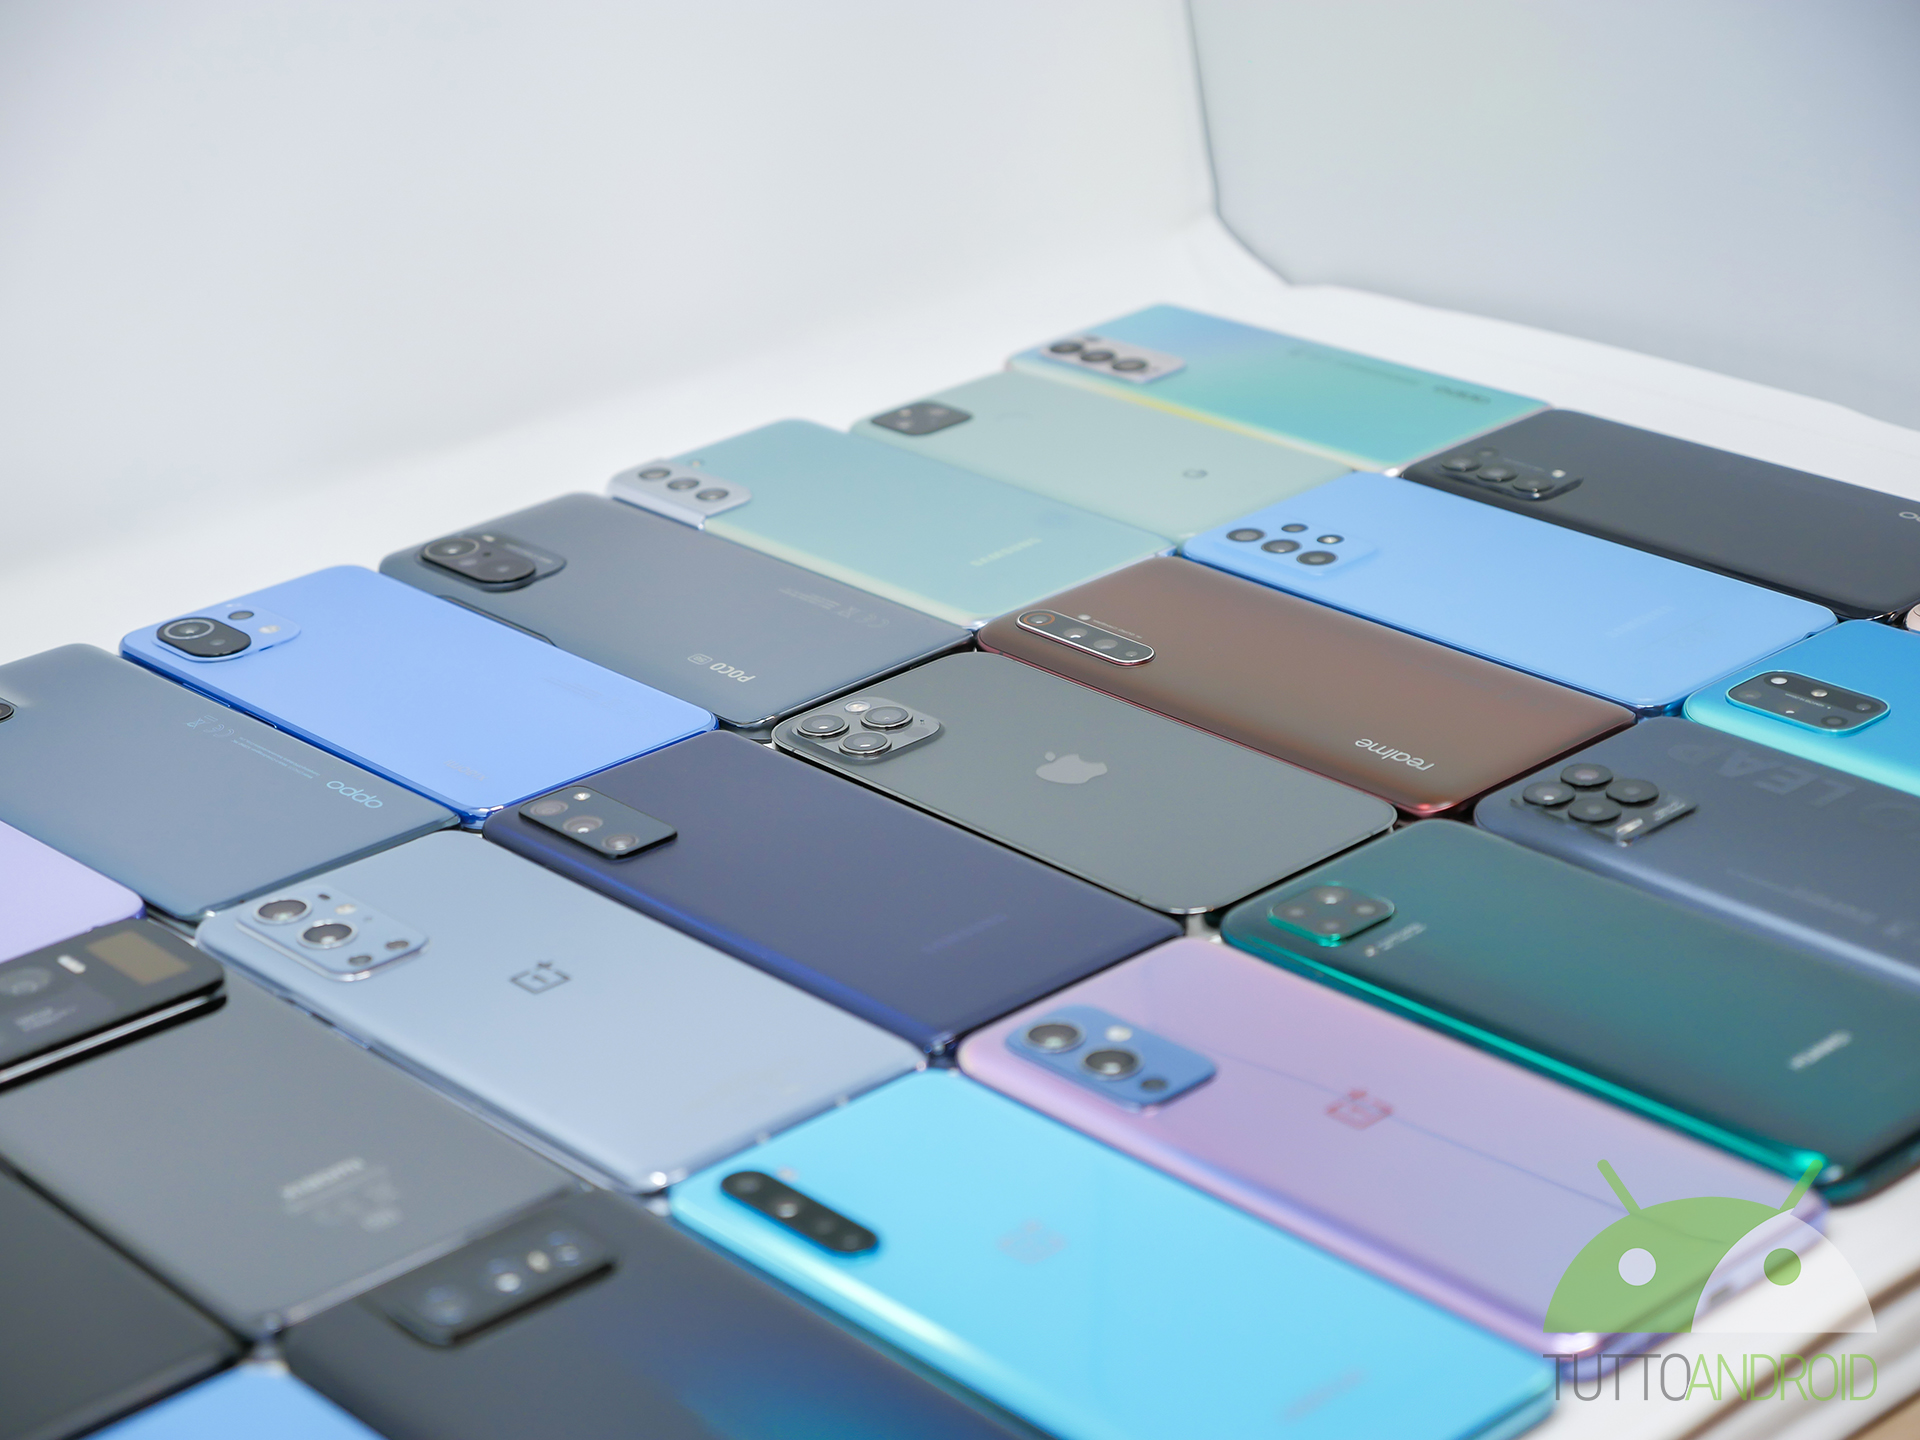 Aggiornamenti per Samsung Galaxy Note 20, Xiaomi CIVI, Huawei Watch GT 2 e altri - TuttoAndroid.net